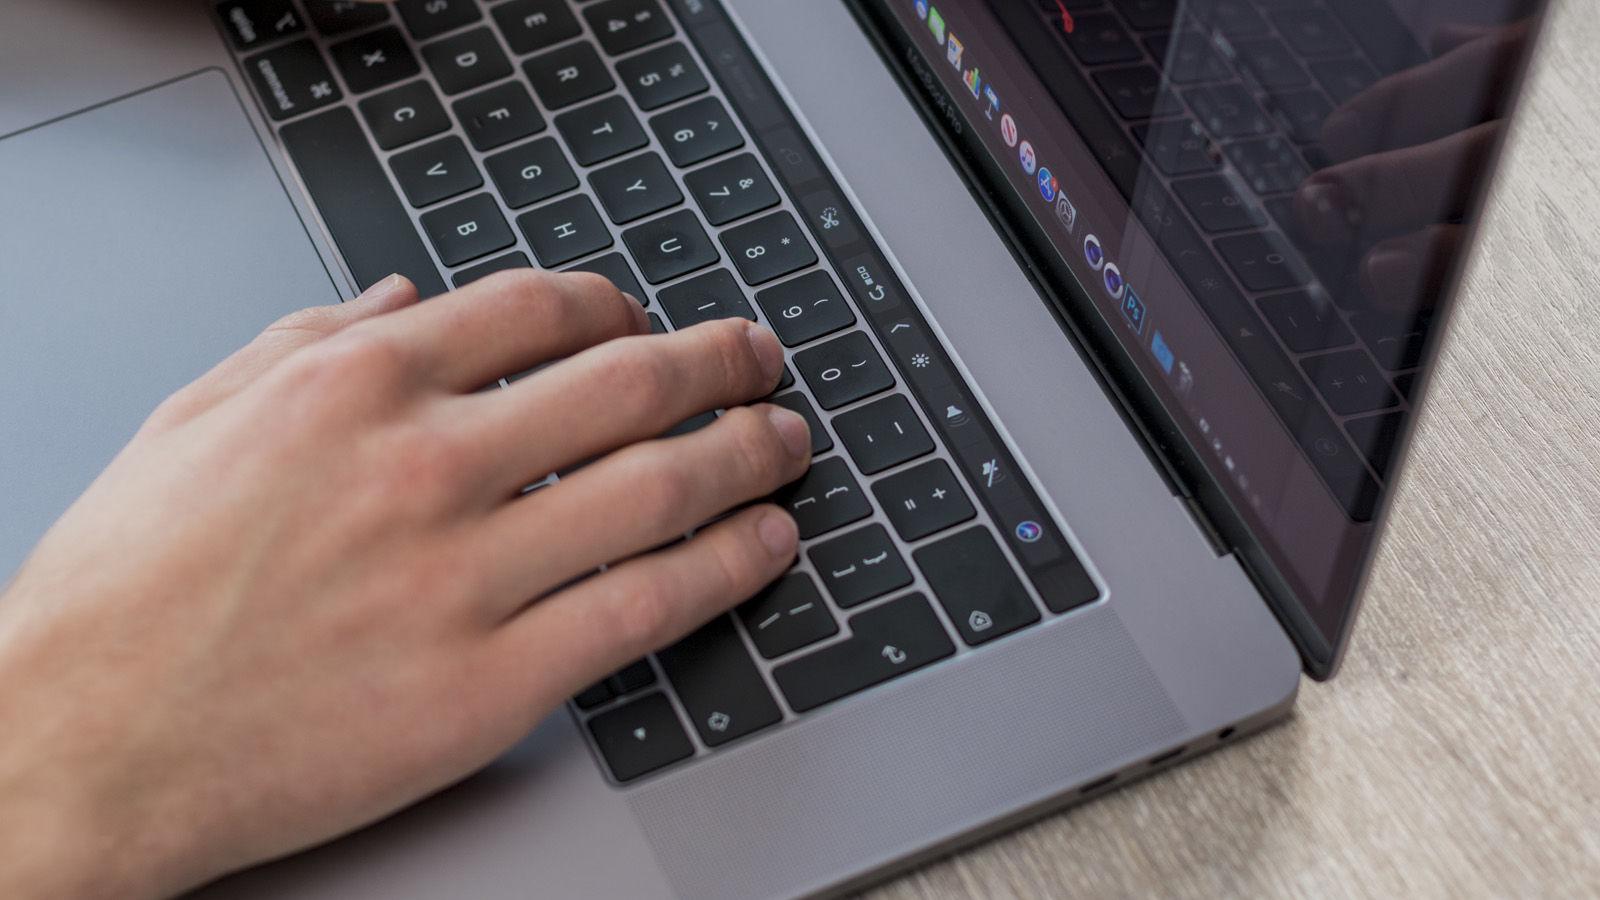 Hands on a gray MacBook